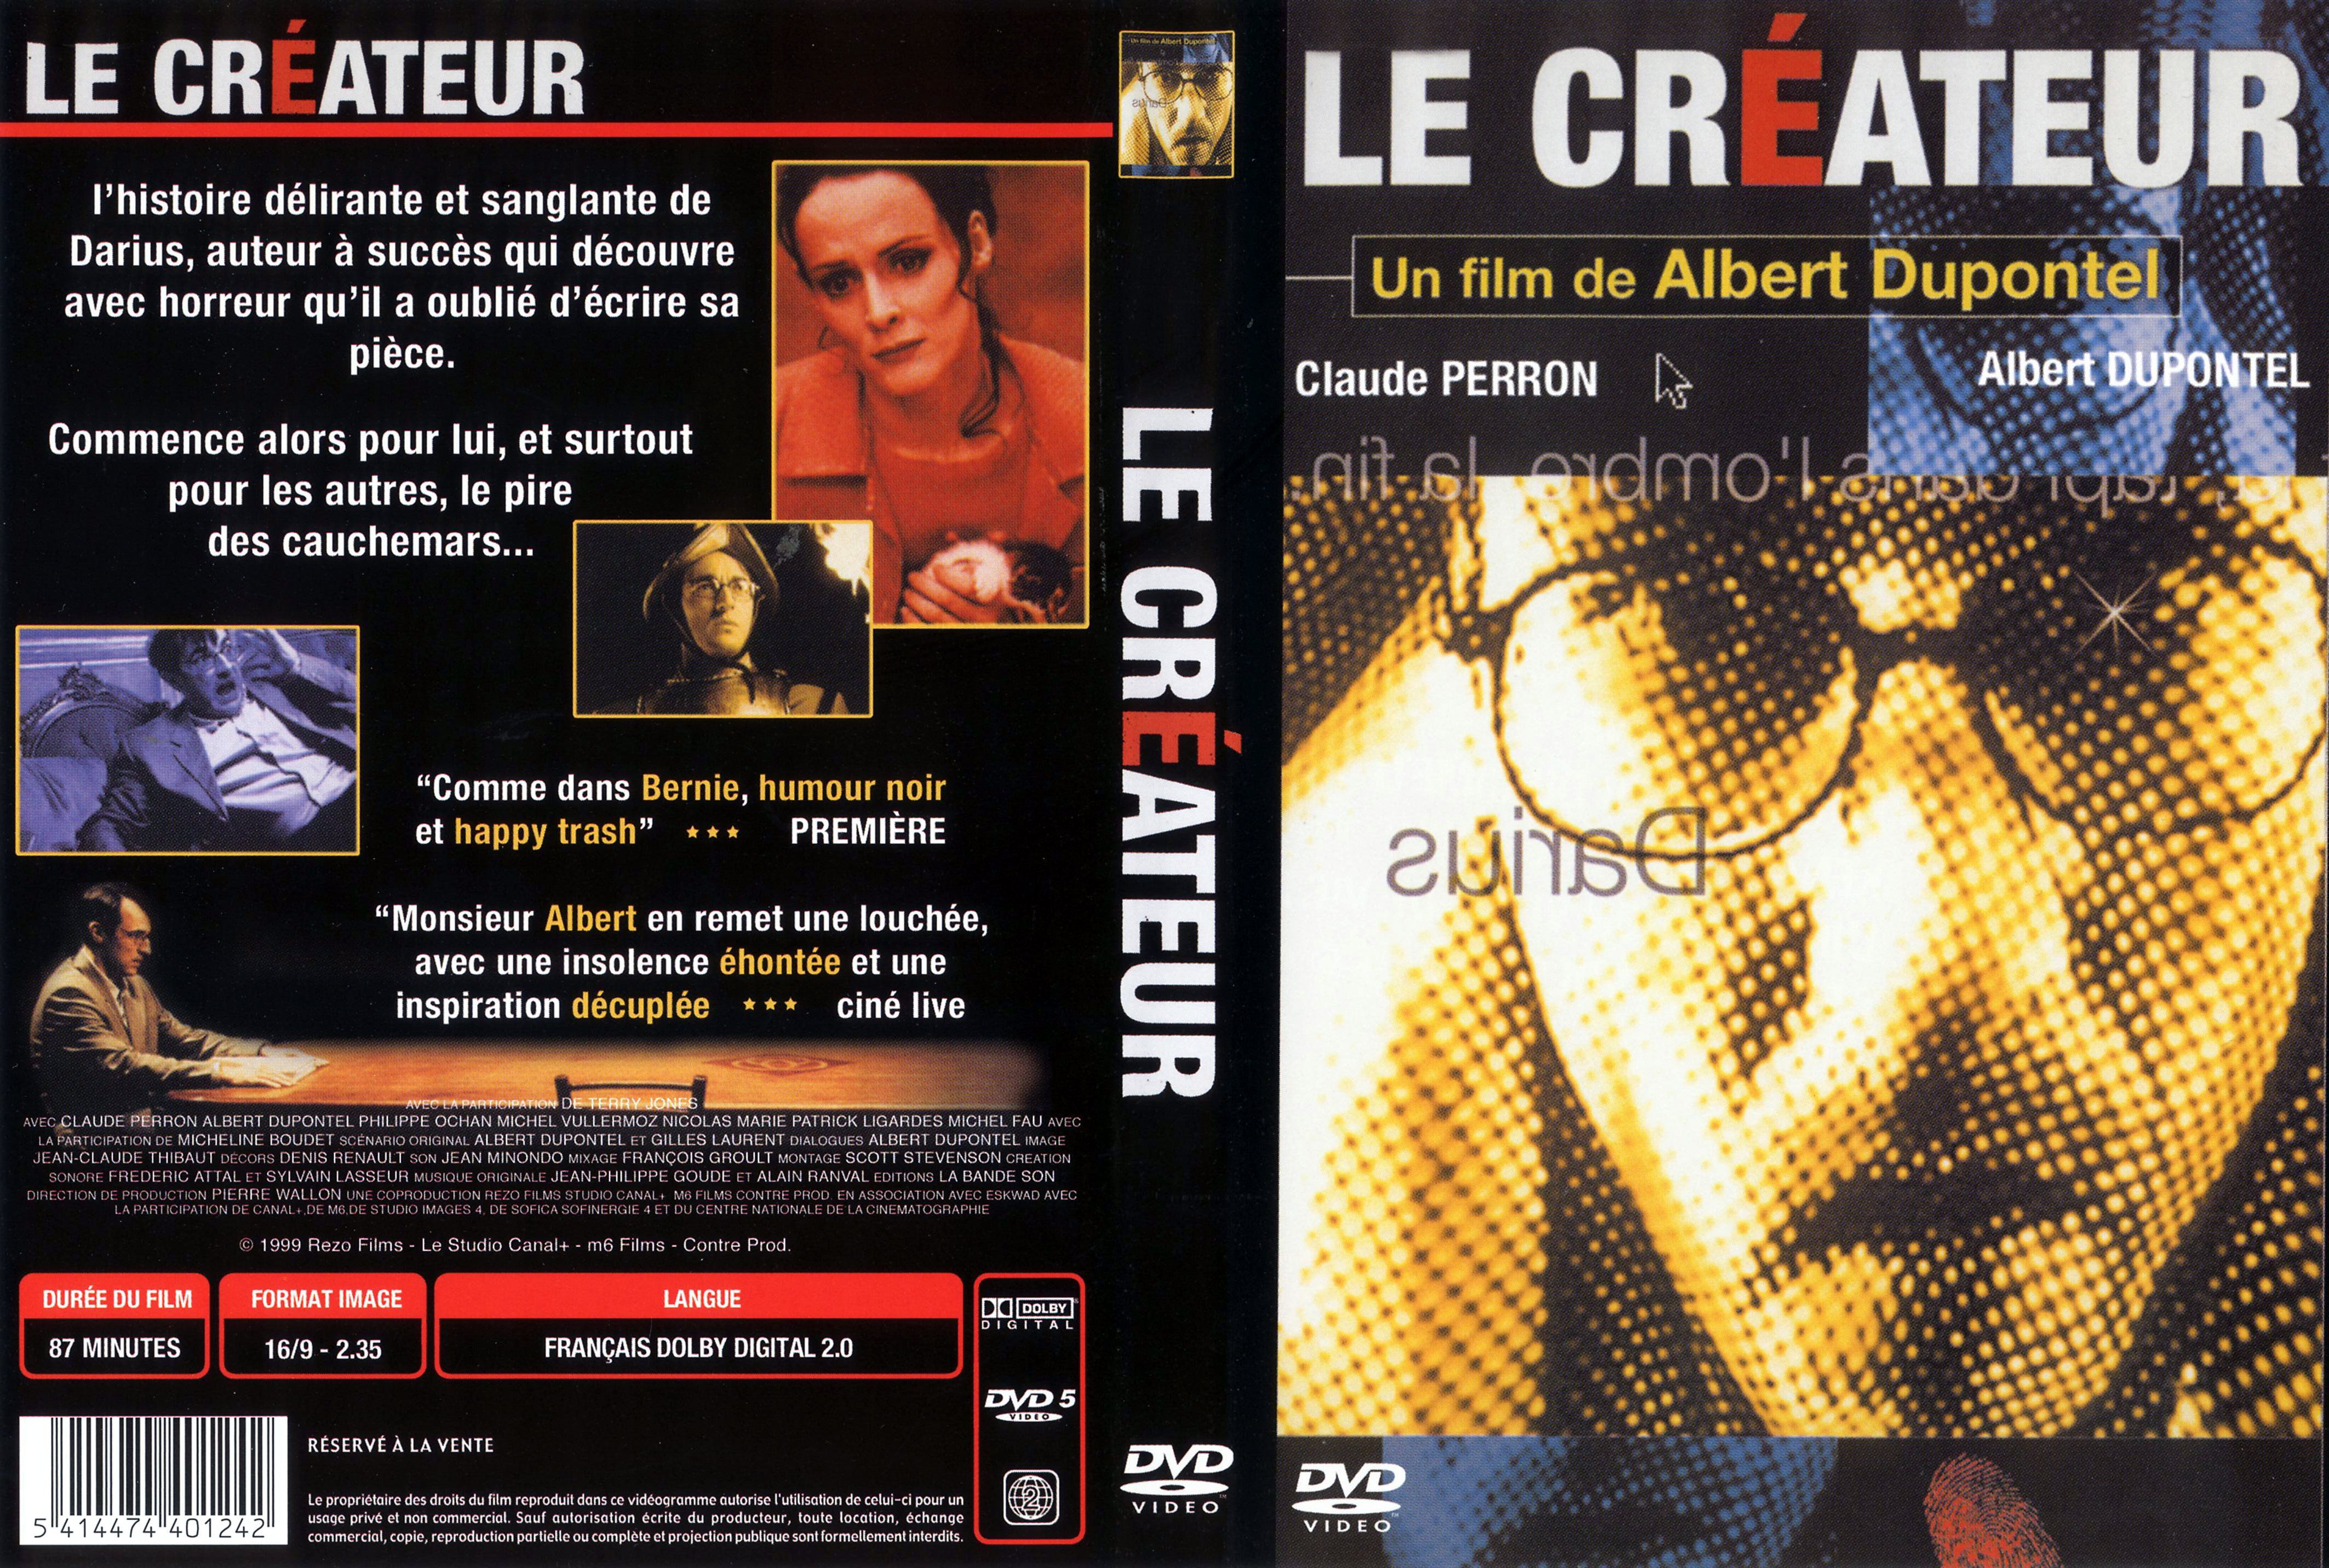 Jaquette DVD Le crateur v2